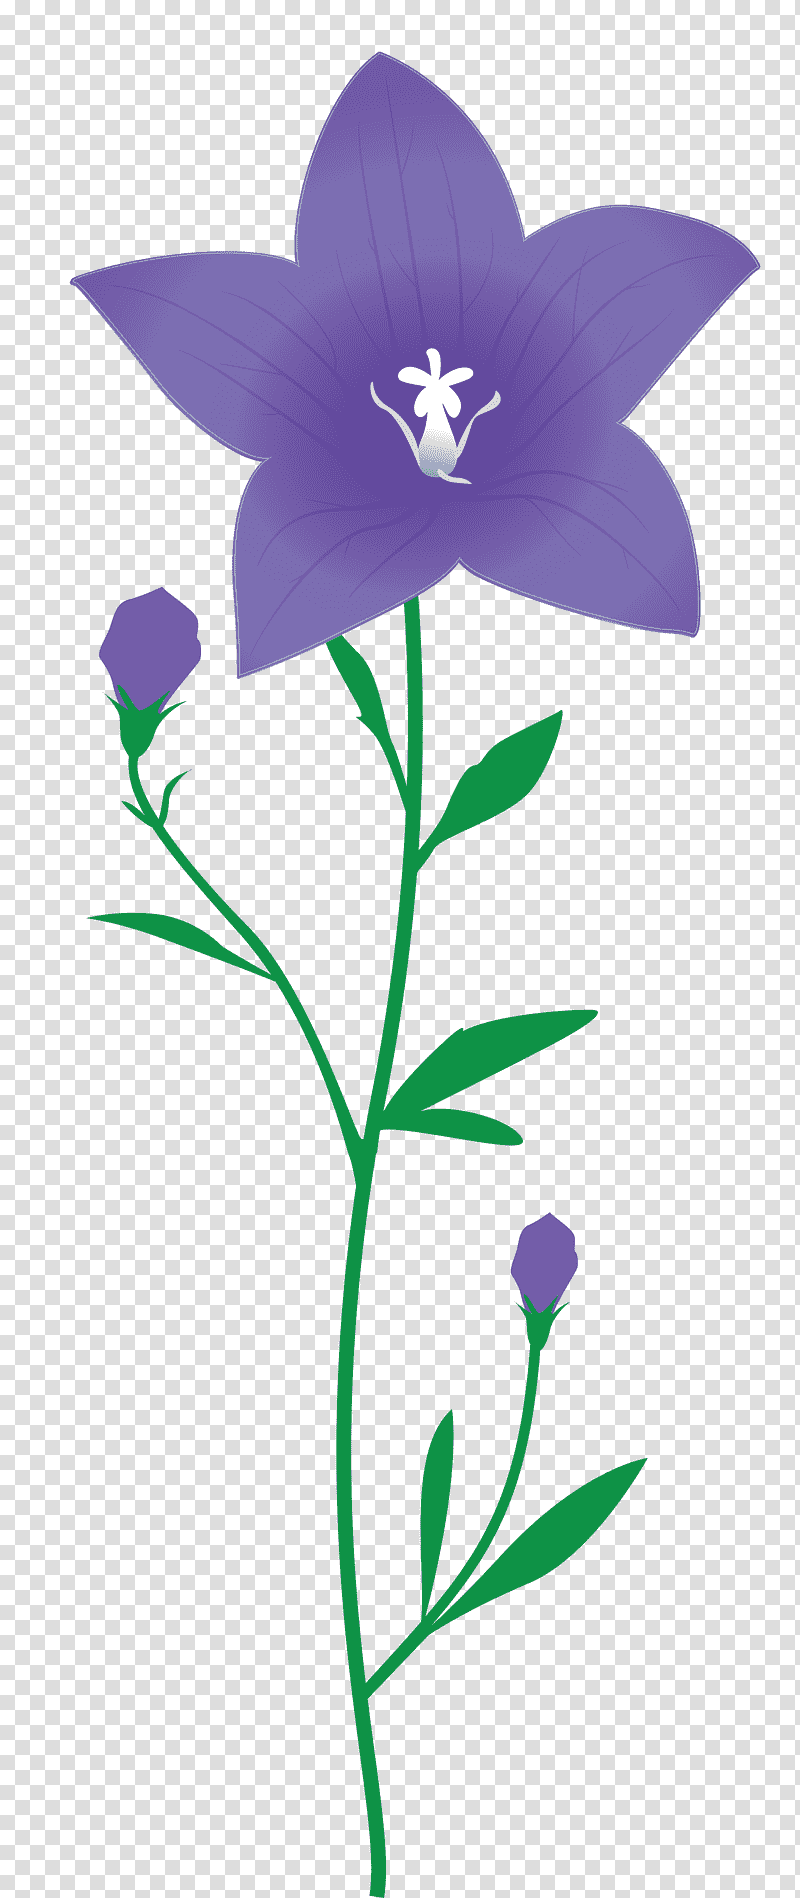 balloon flower, Plant Stem, Bellflower Family, Violet, Leaf, Petal, Lavender transparent background PNG clipart